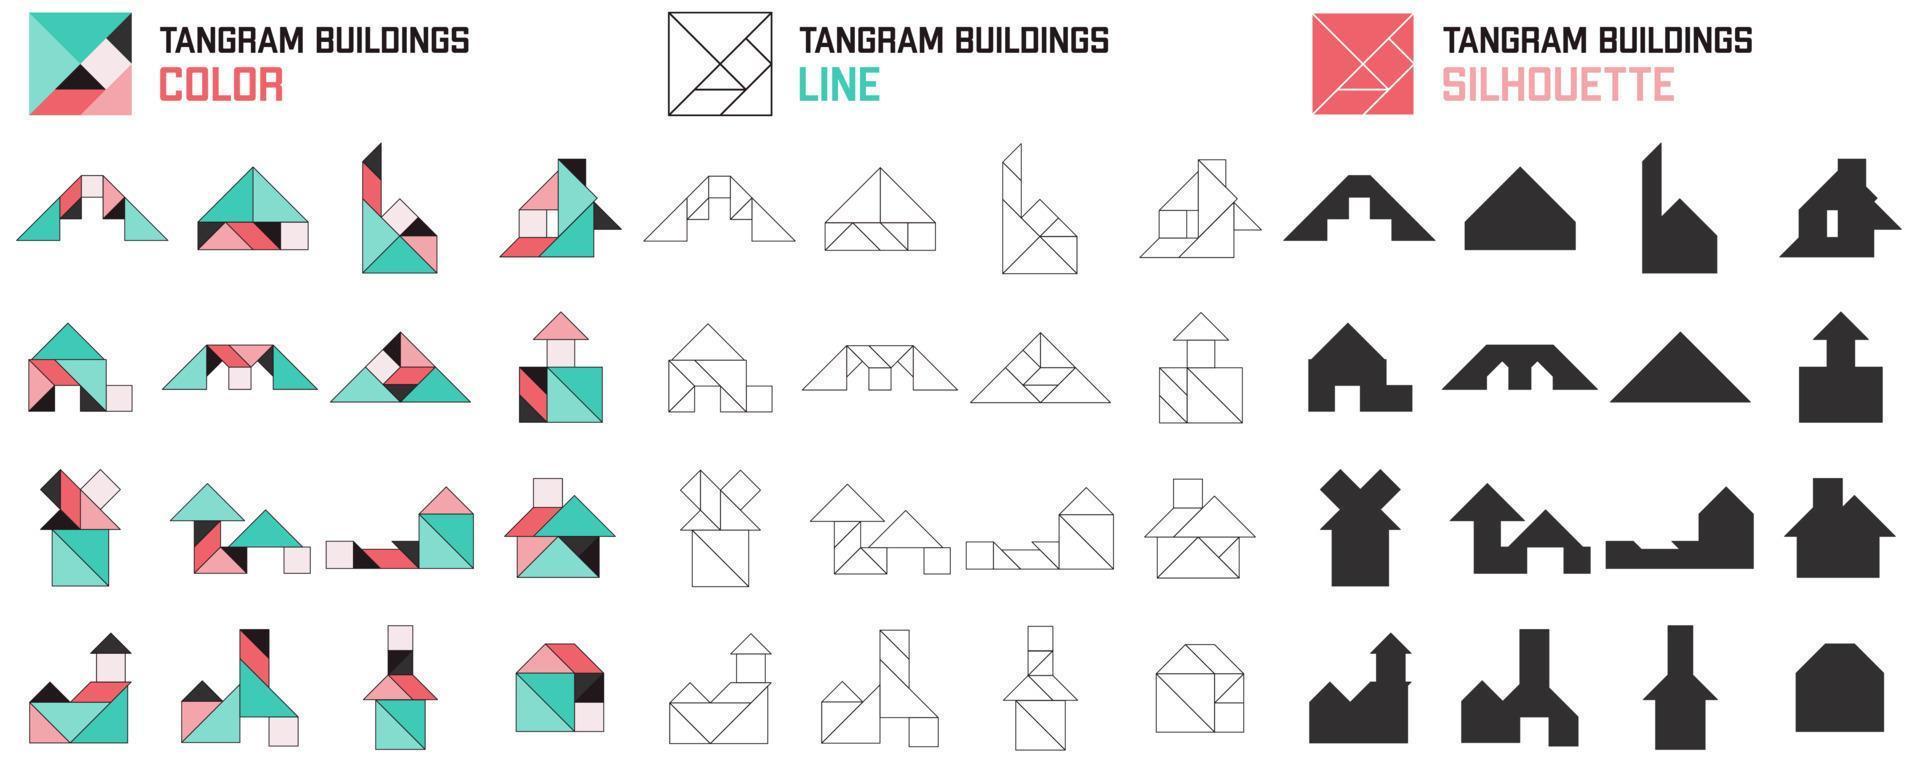 Tangram-Puzzle. Reihe von Tangram-Gebäuden. Farbe, Linie und Silhouette. Puzzle für Kinder. Vektorsatz. Vektor-Illustration vektor